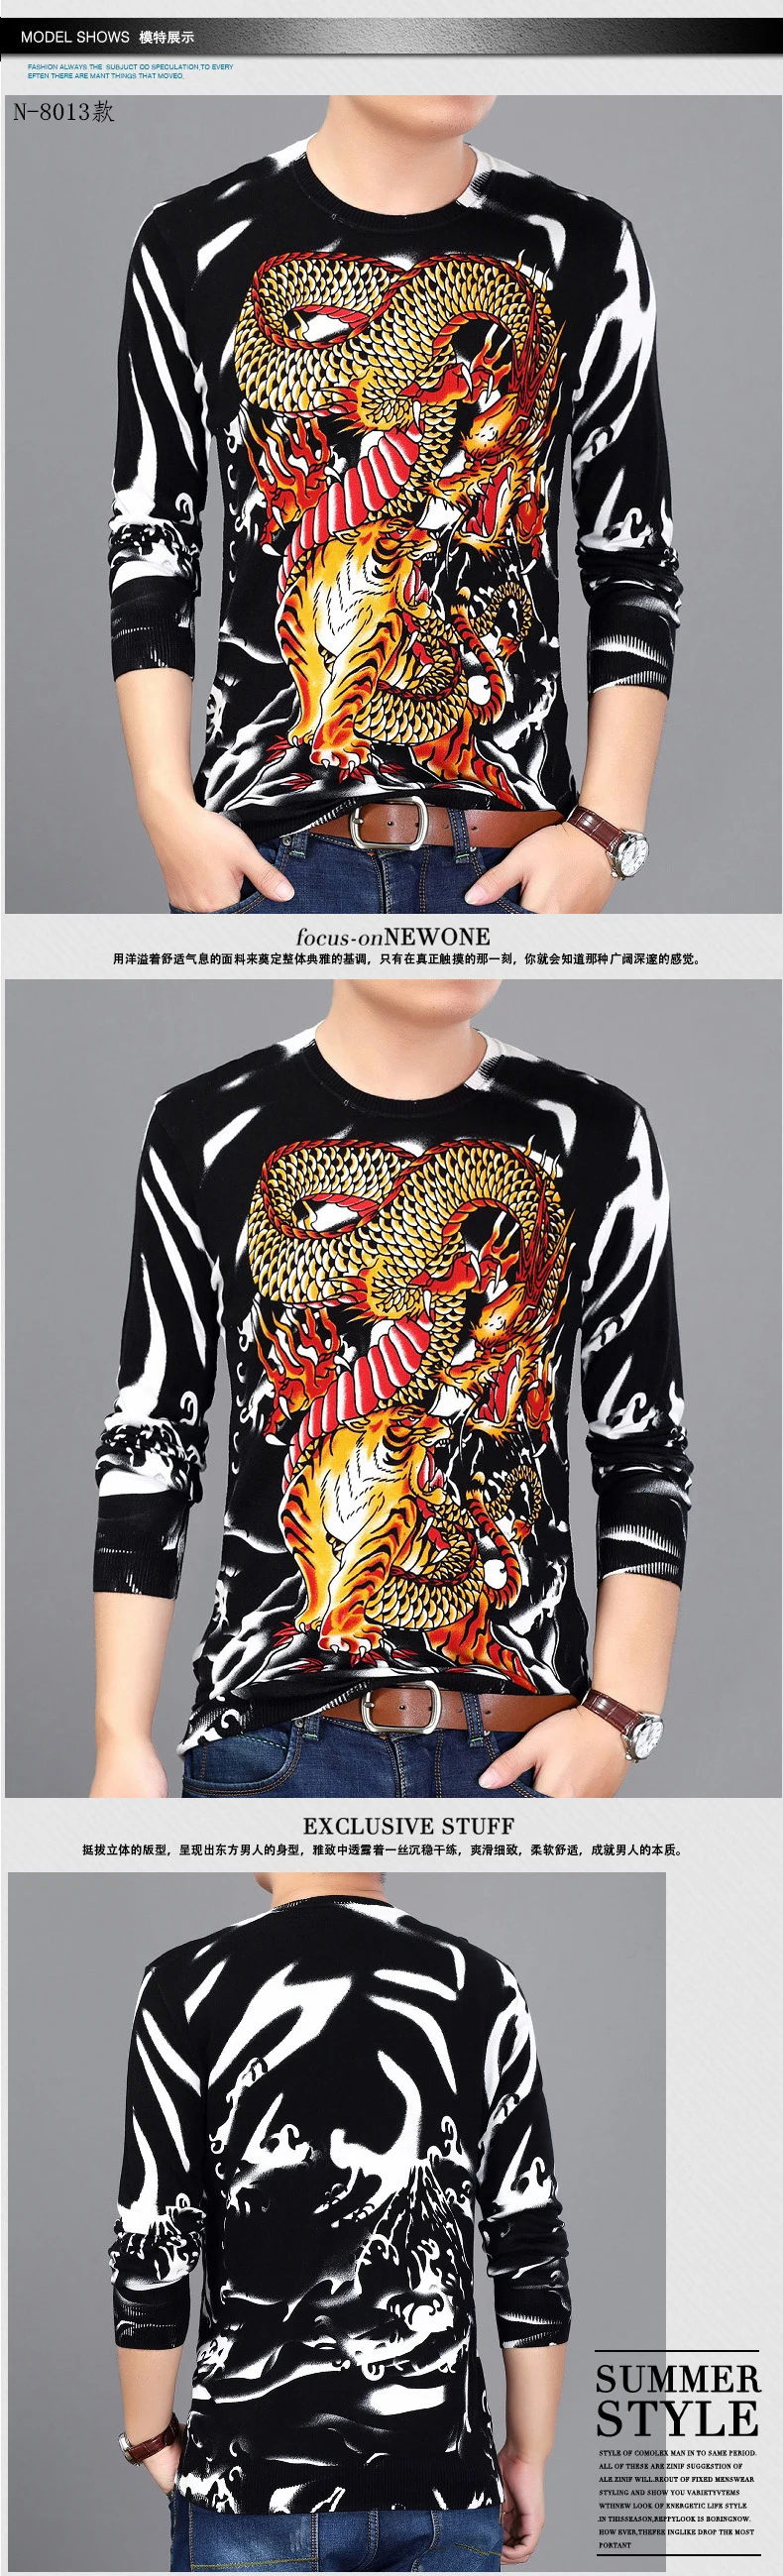 Прямая продажа с фабрики в китайском стиле, изысканный модный Повседневный свитер с принтом, осень 2017, новый качественный хлопковый свитер